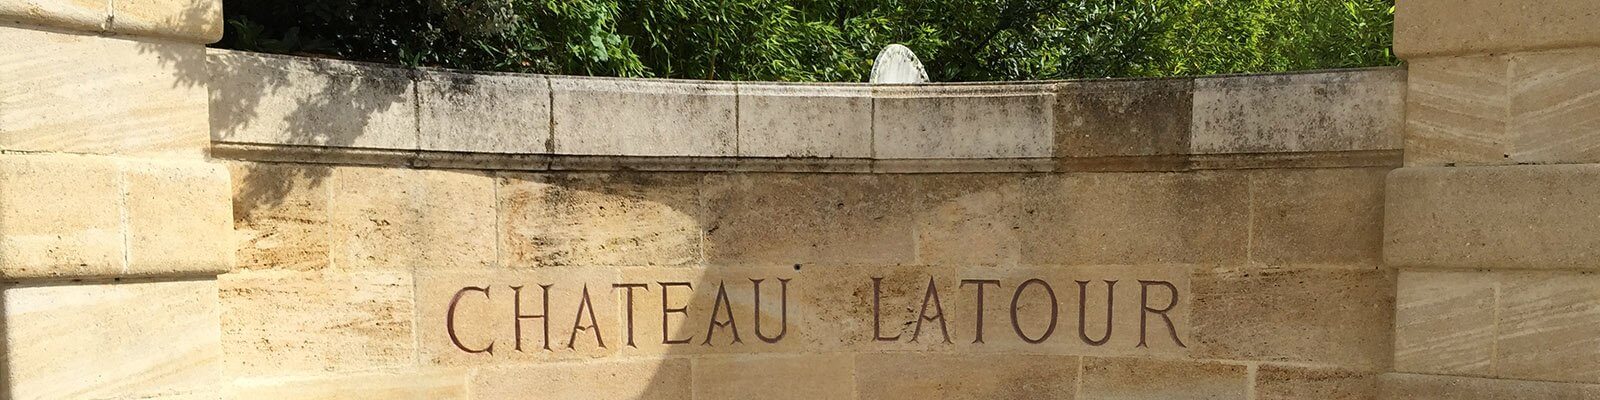 Unsere Kollektion von Château Latour - Finden Sie diese bei Onshore Cellars Ihrem Yacht-Weinlieferanten